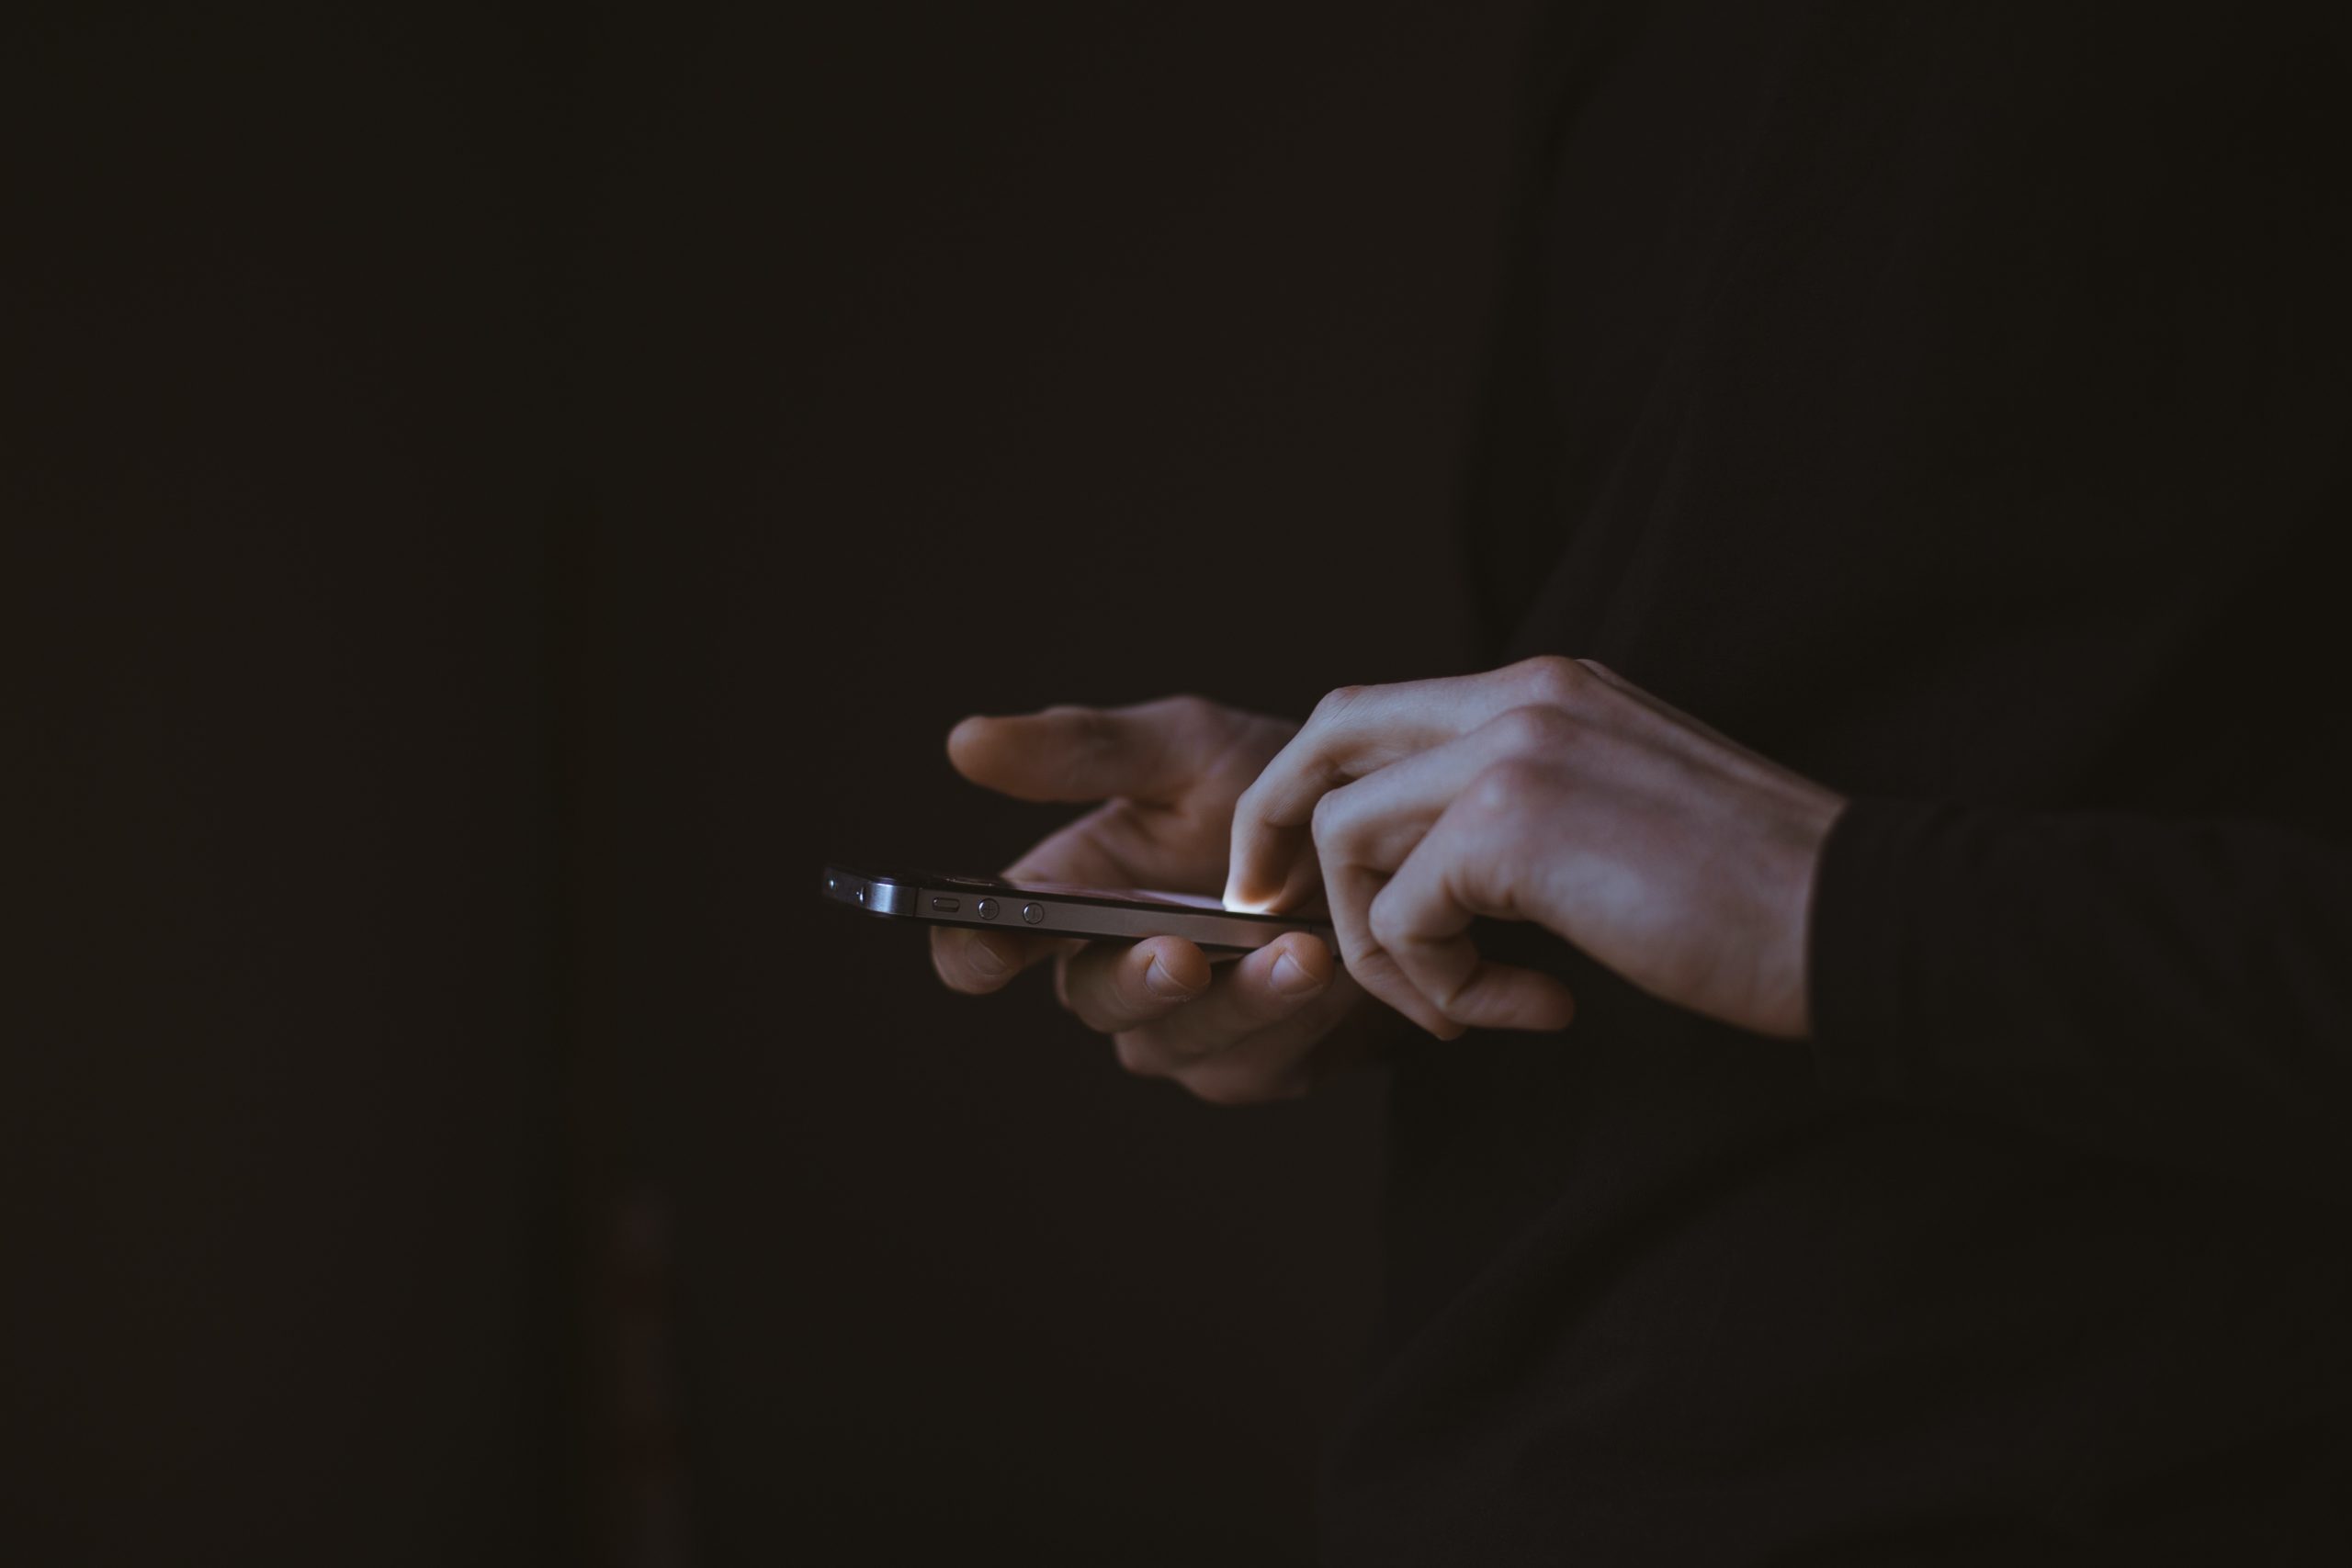 ΑΑΔΕ: Προσοχή σε παραπλανητικά SMS υποκλοπής στοιχείων – Πώς θα καταλάβετε ότι είναι fake τα μηνύματα